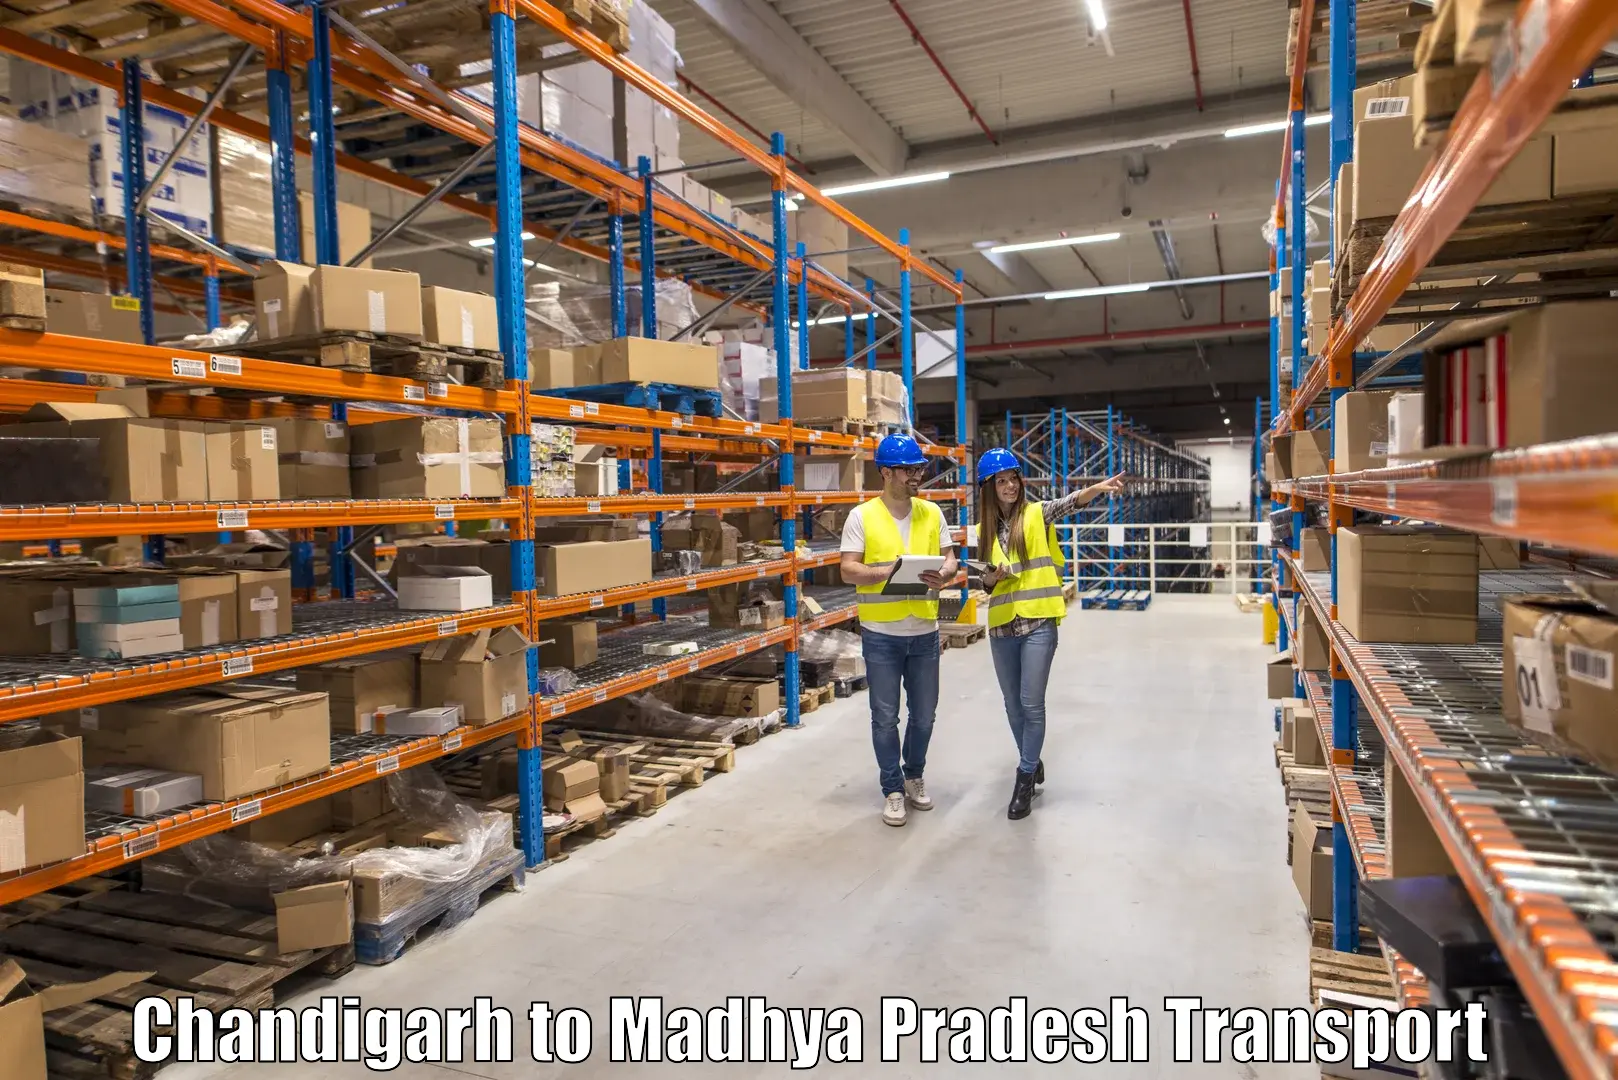 Furniture transport service Chandigarh to Jaitwara